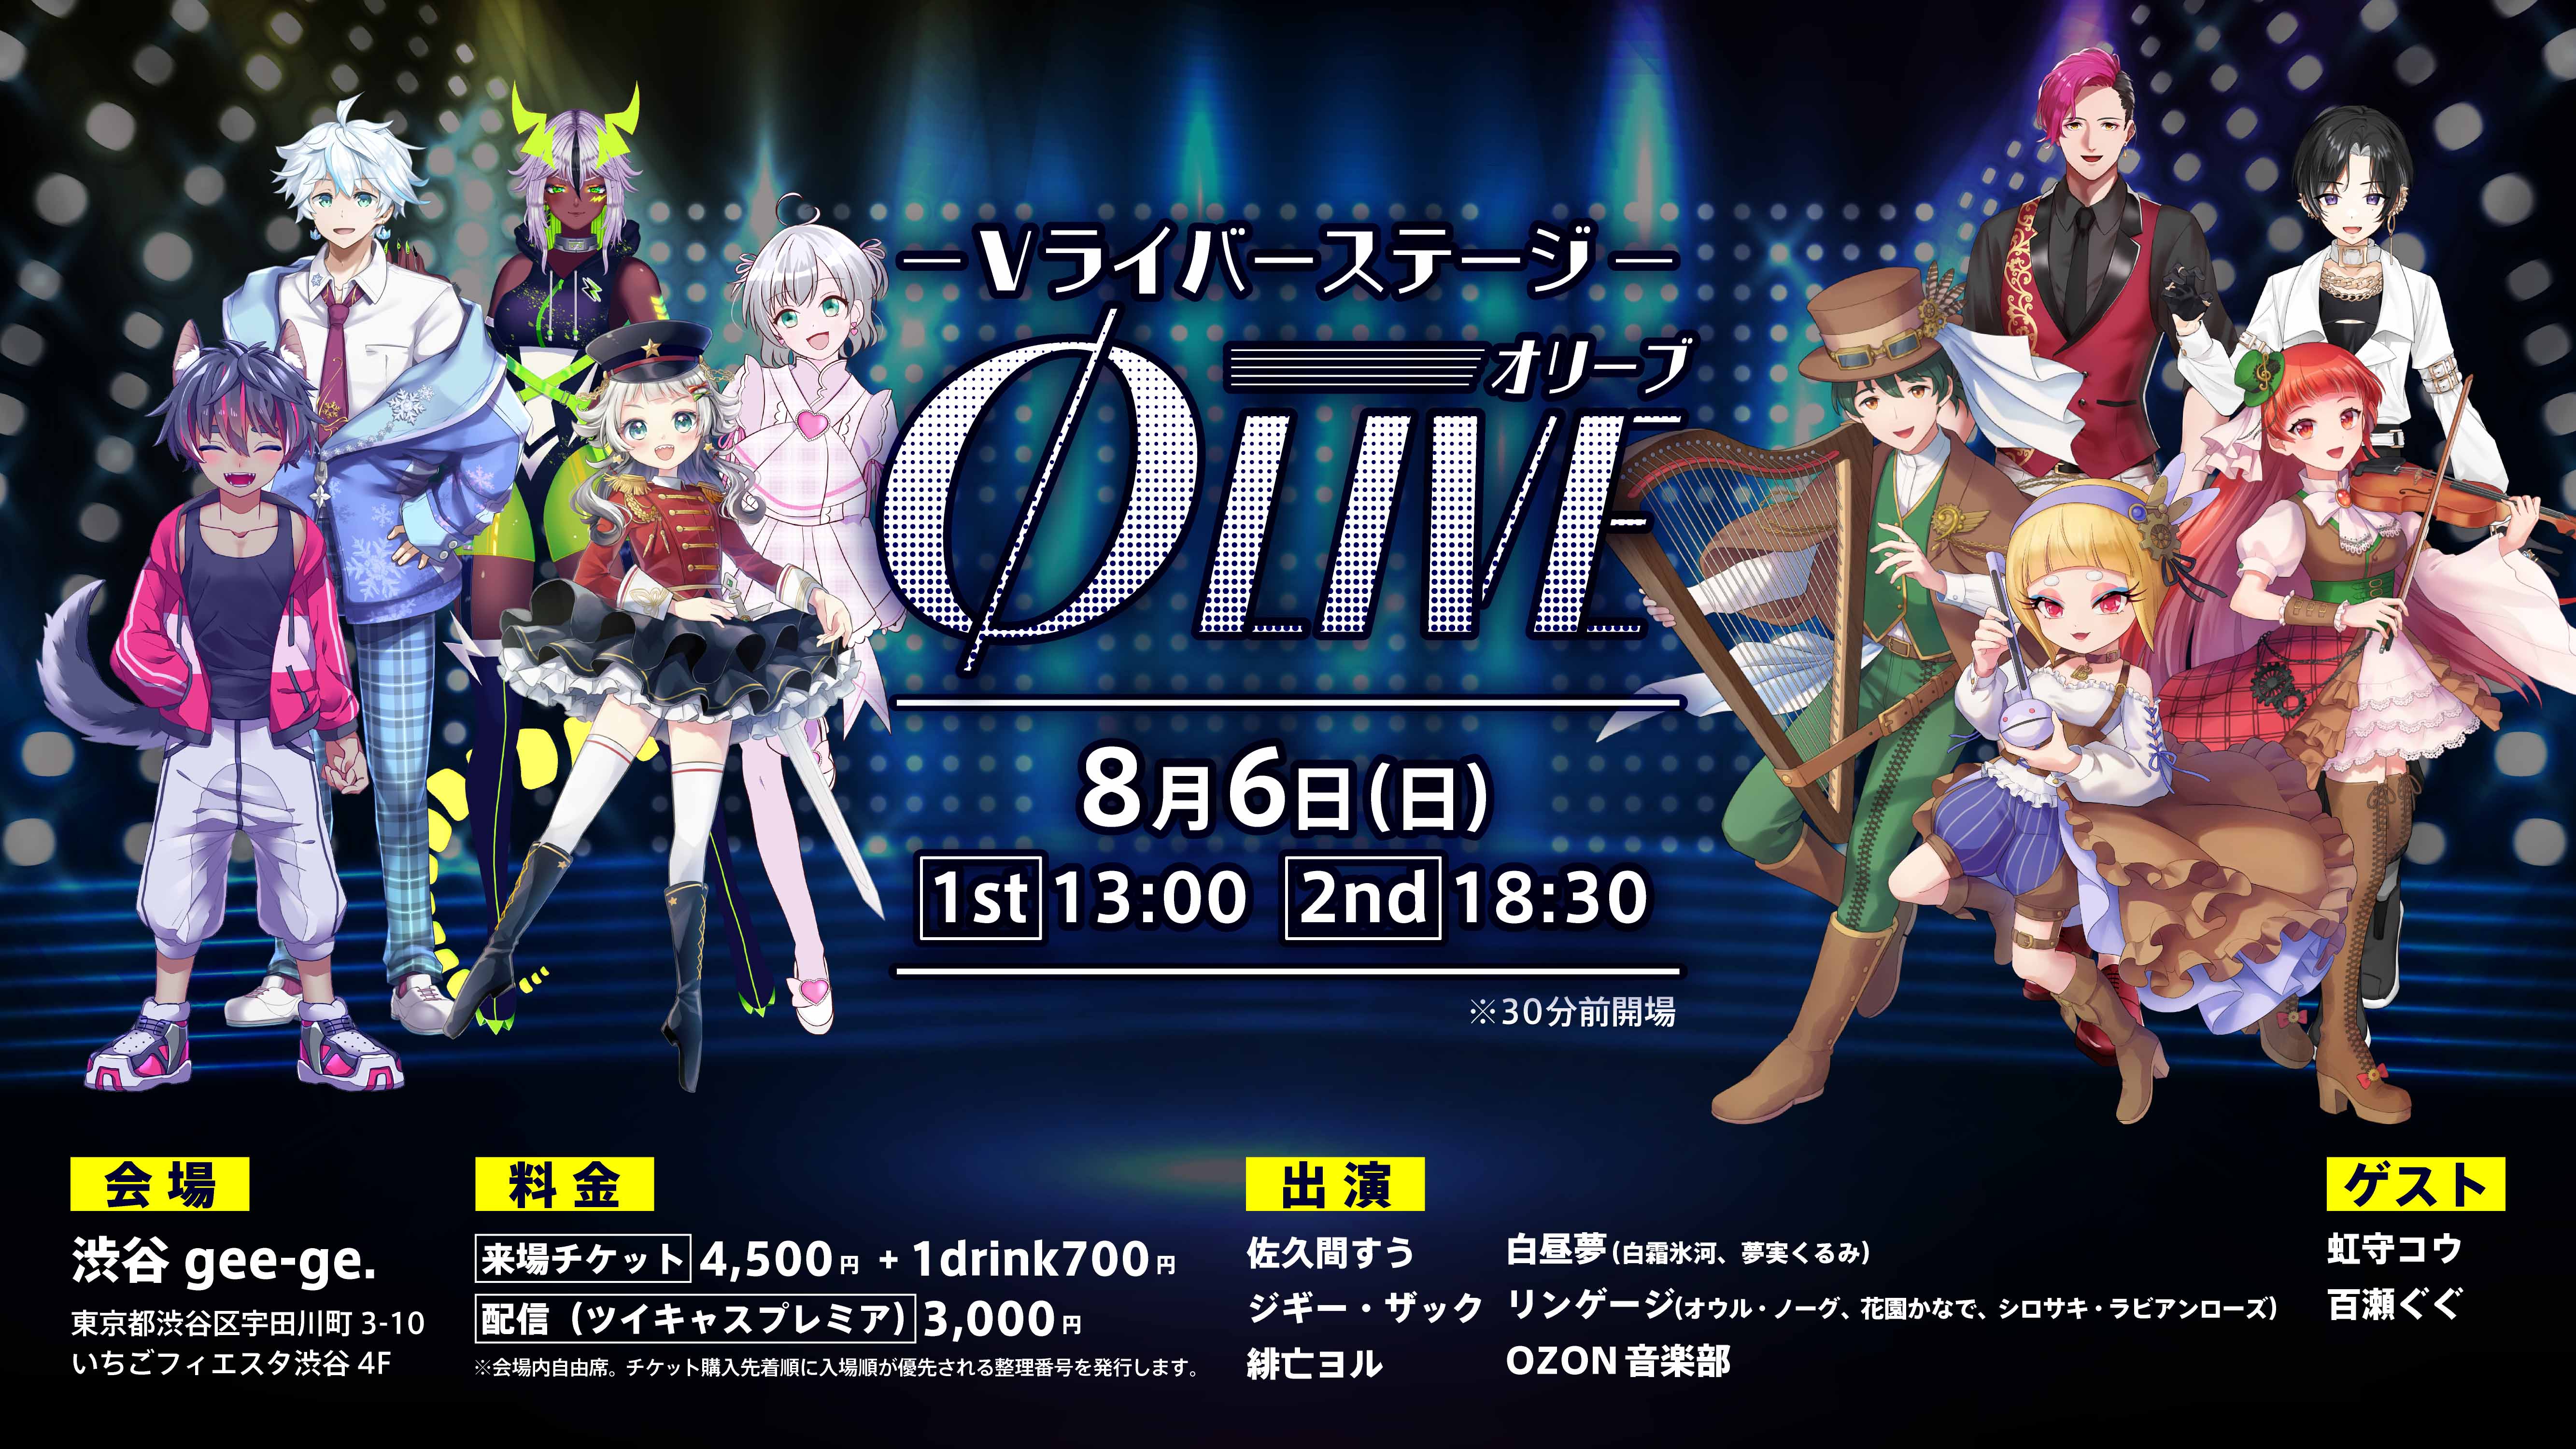 Vライバーステージ「Olive」2nd